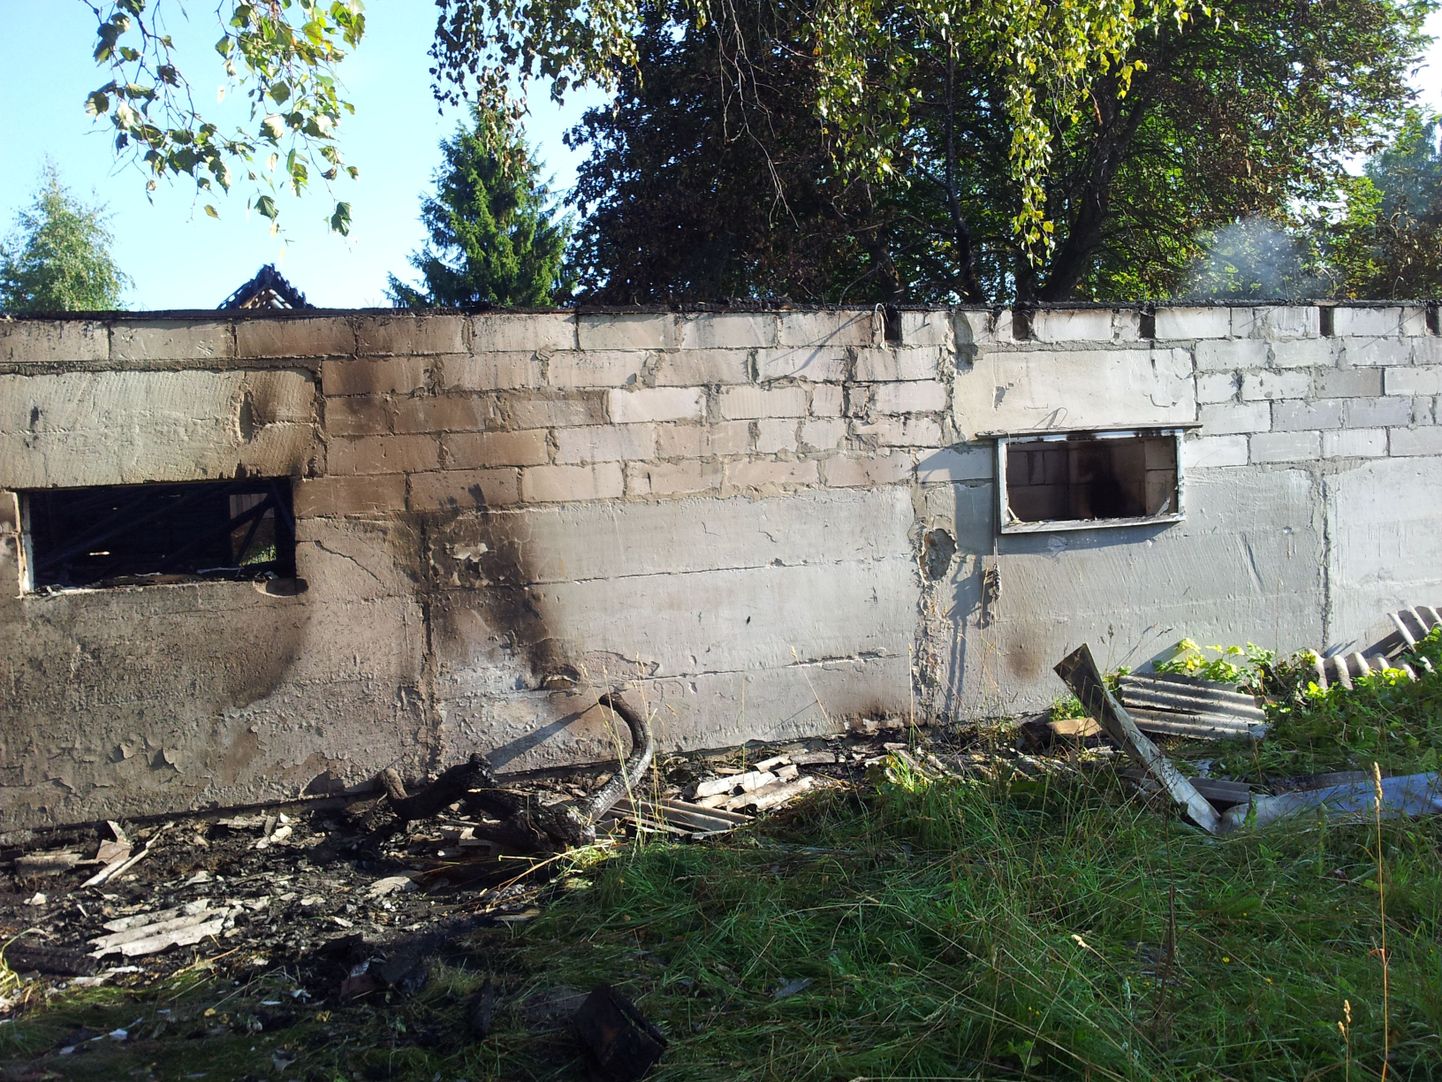 Ühele Metsaääre küla pererahvale avanes täna hommikul selline nukker pilt maha põlenud hoonest.